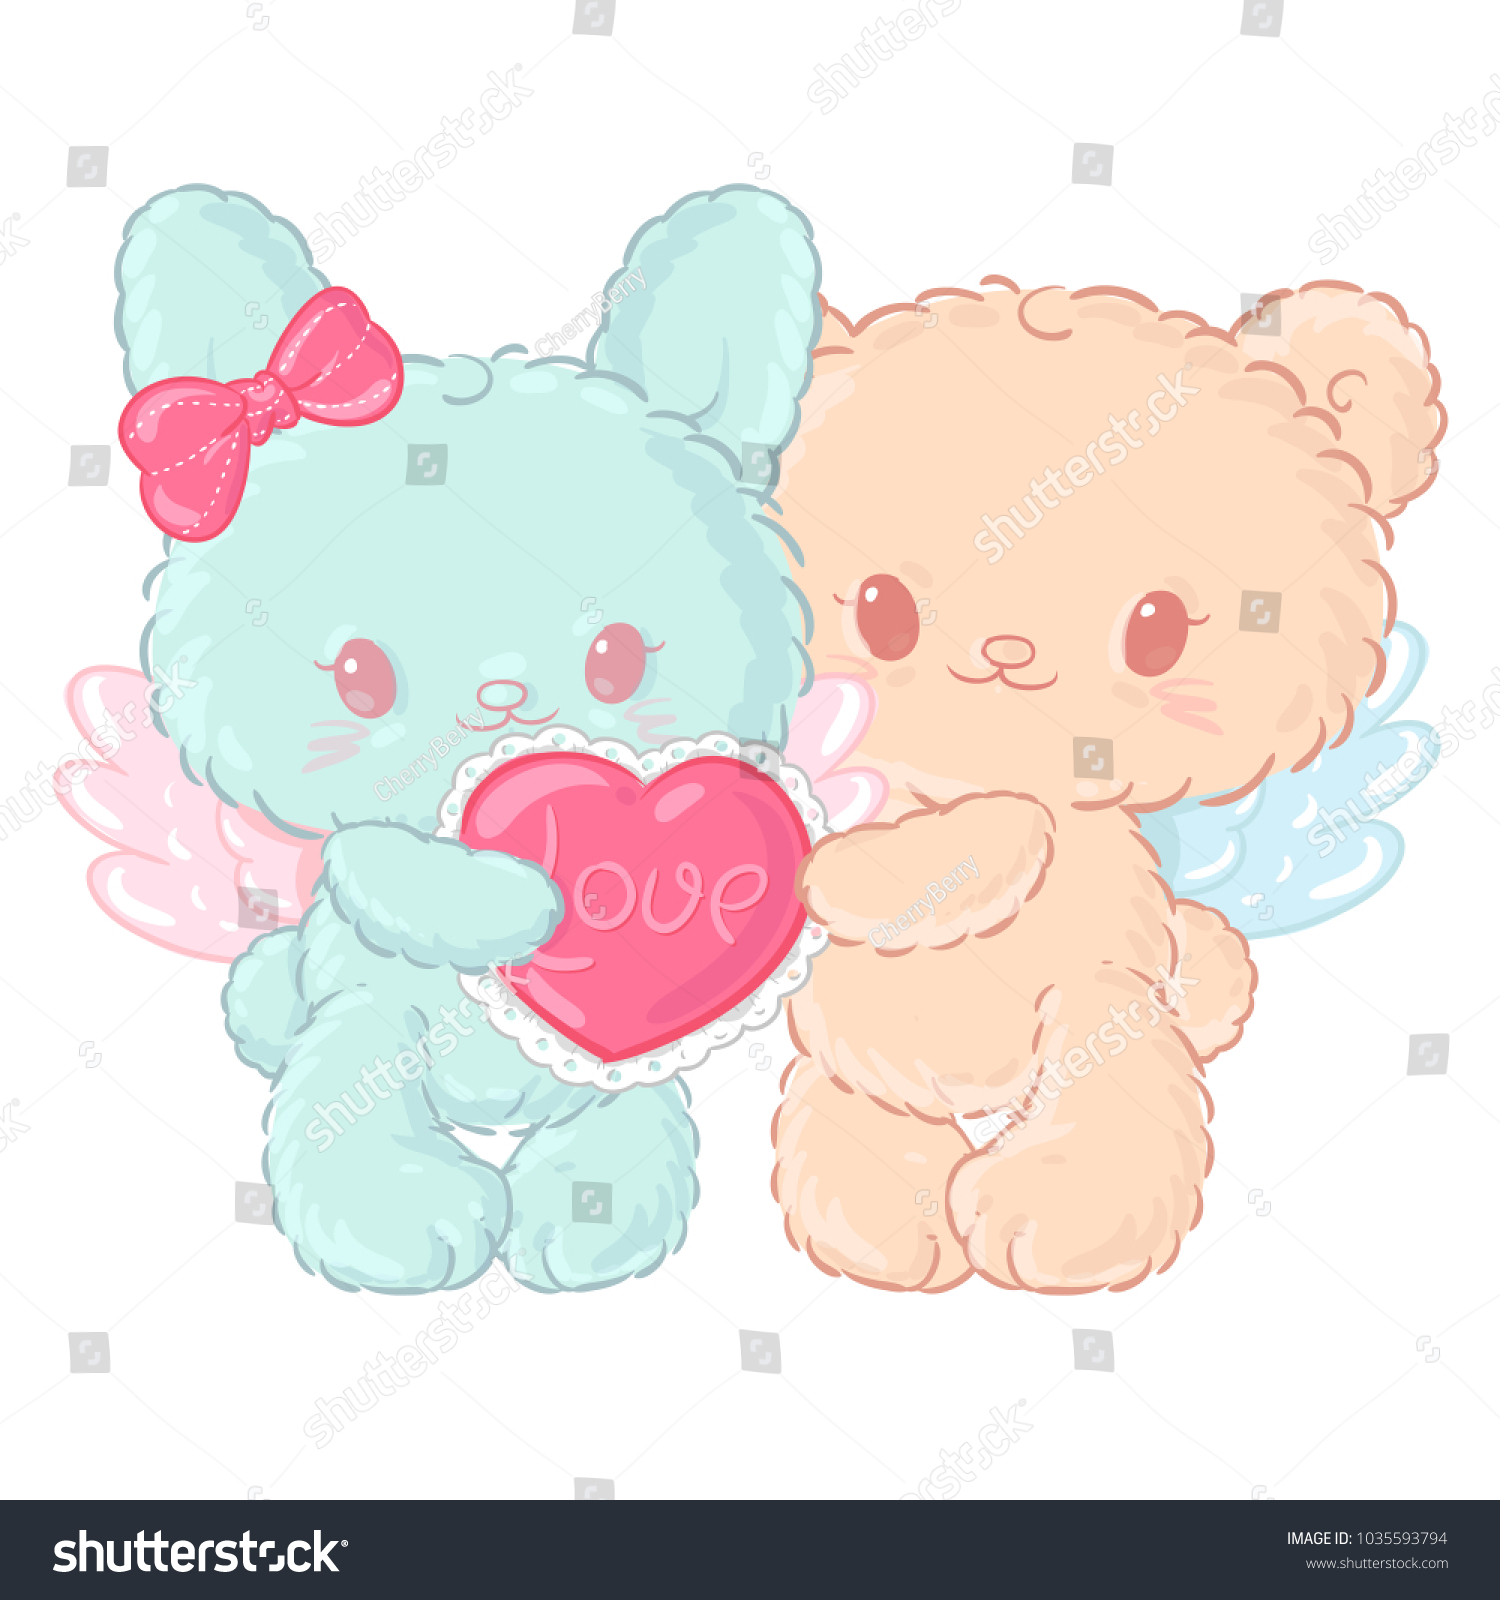 teddy and bunny